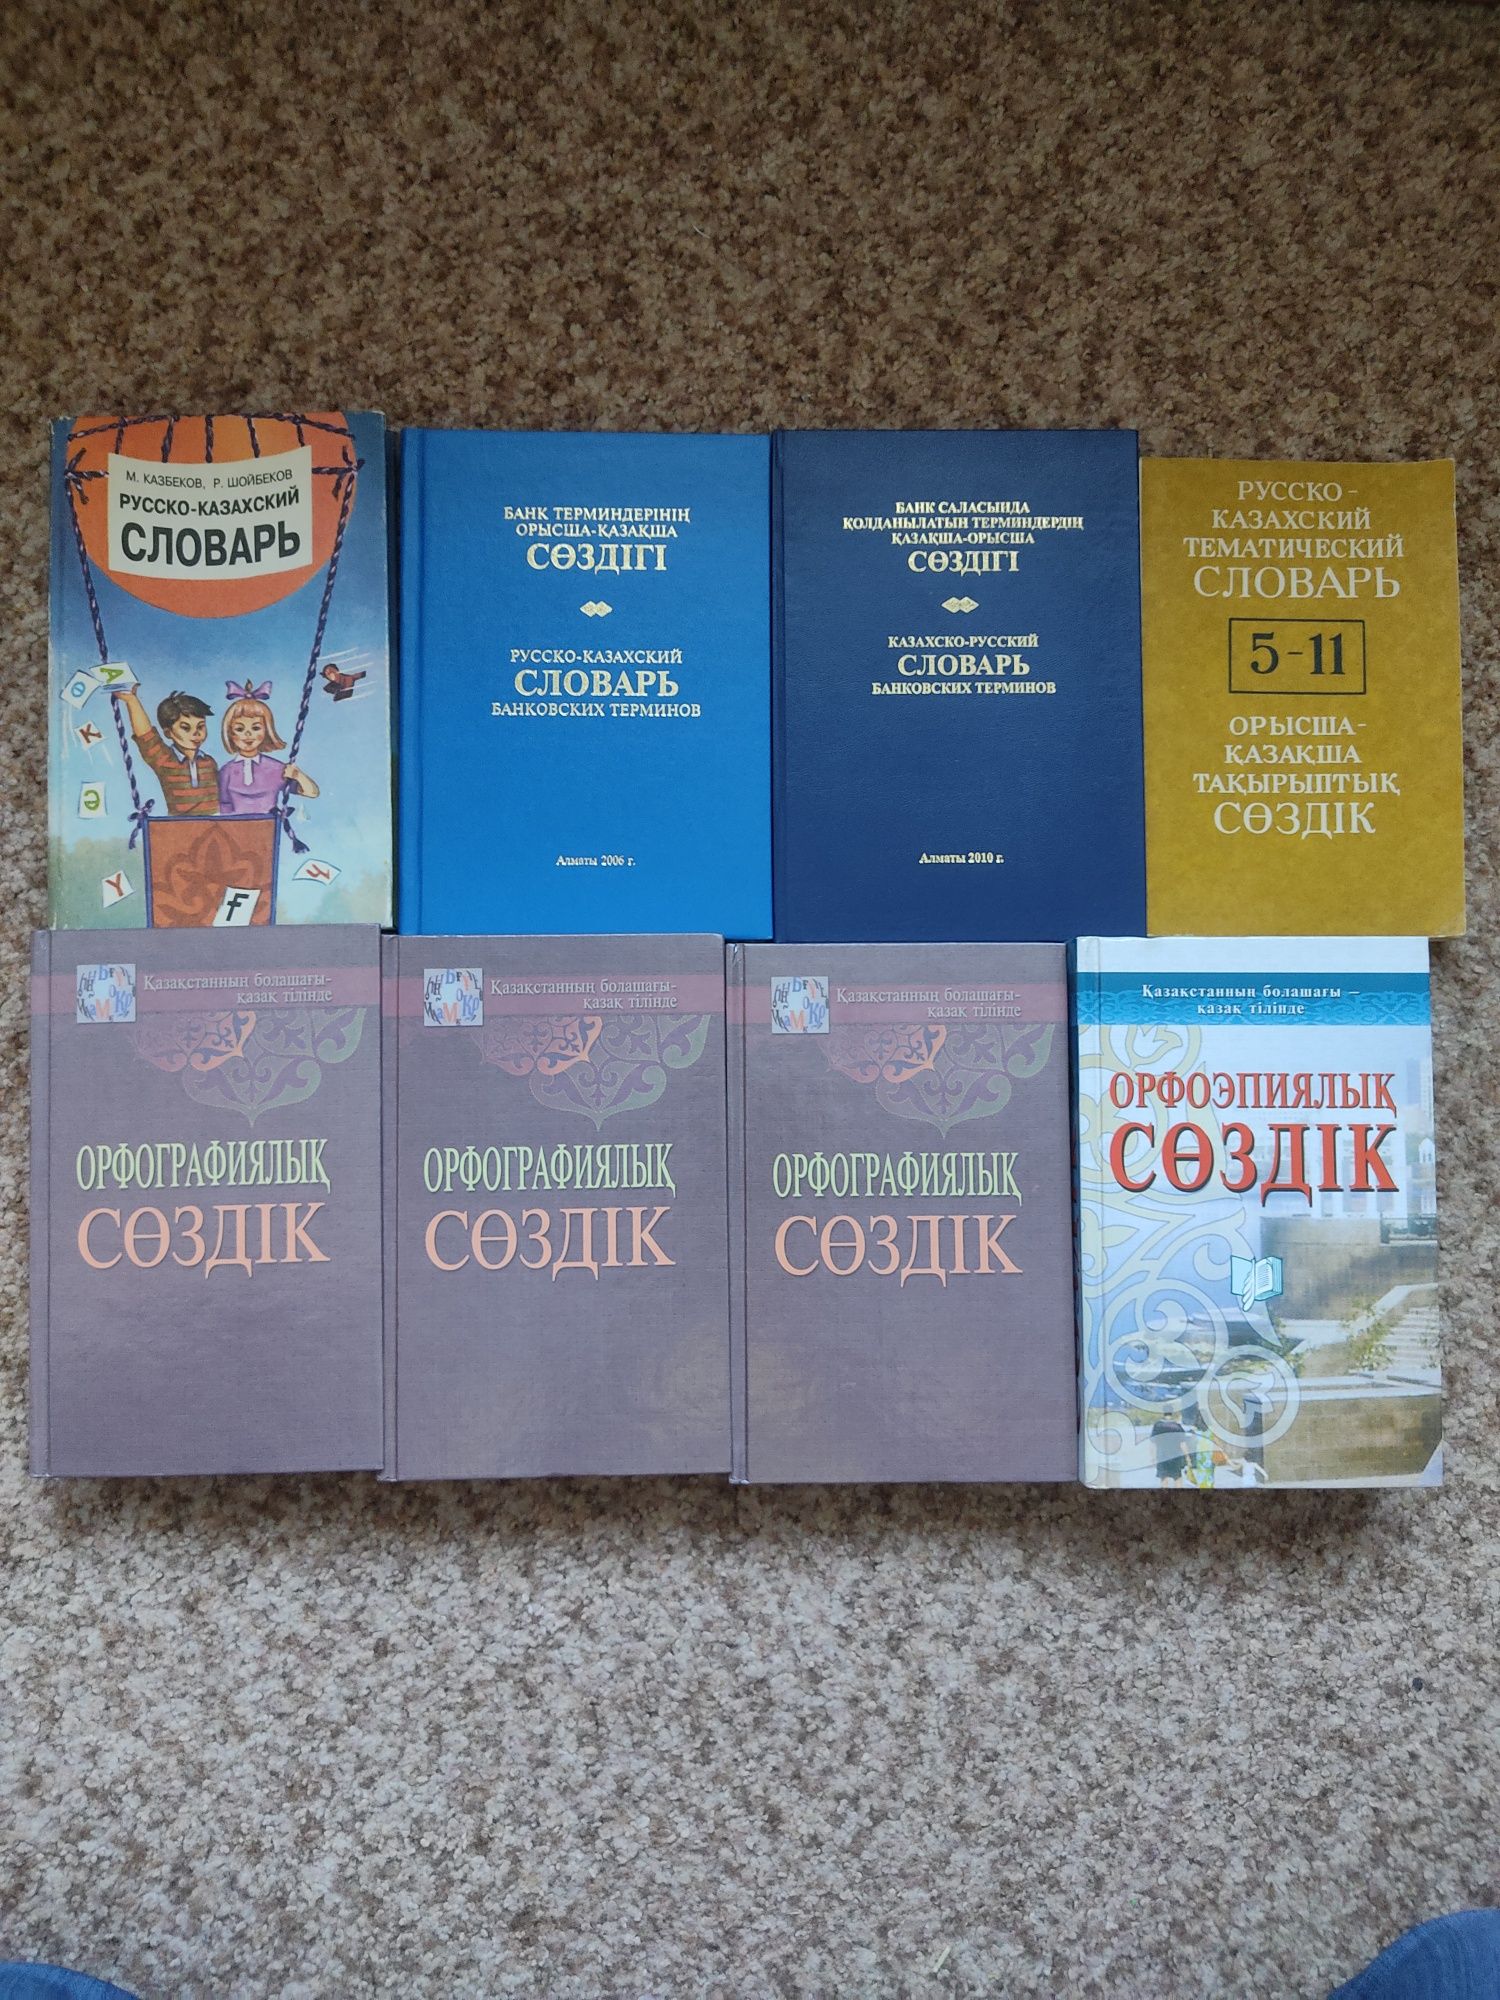 Продам словари по казахскому языку. Цена за все 5000 тг.